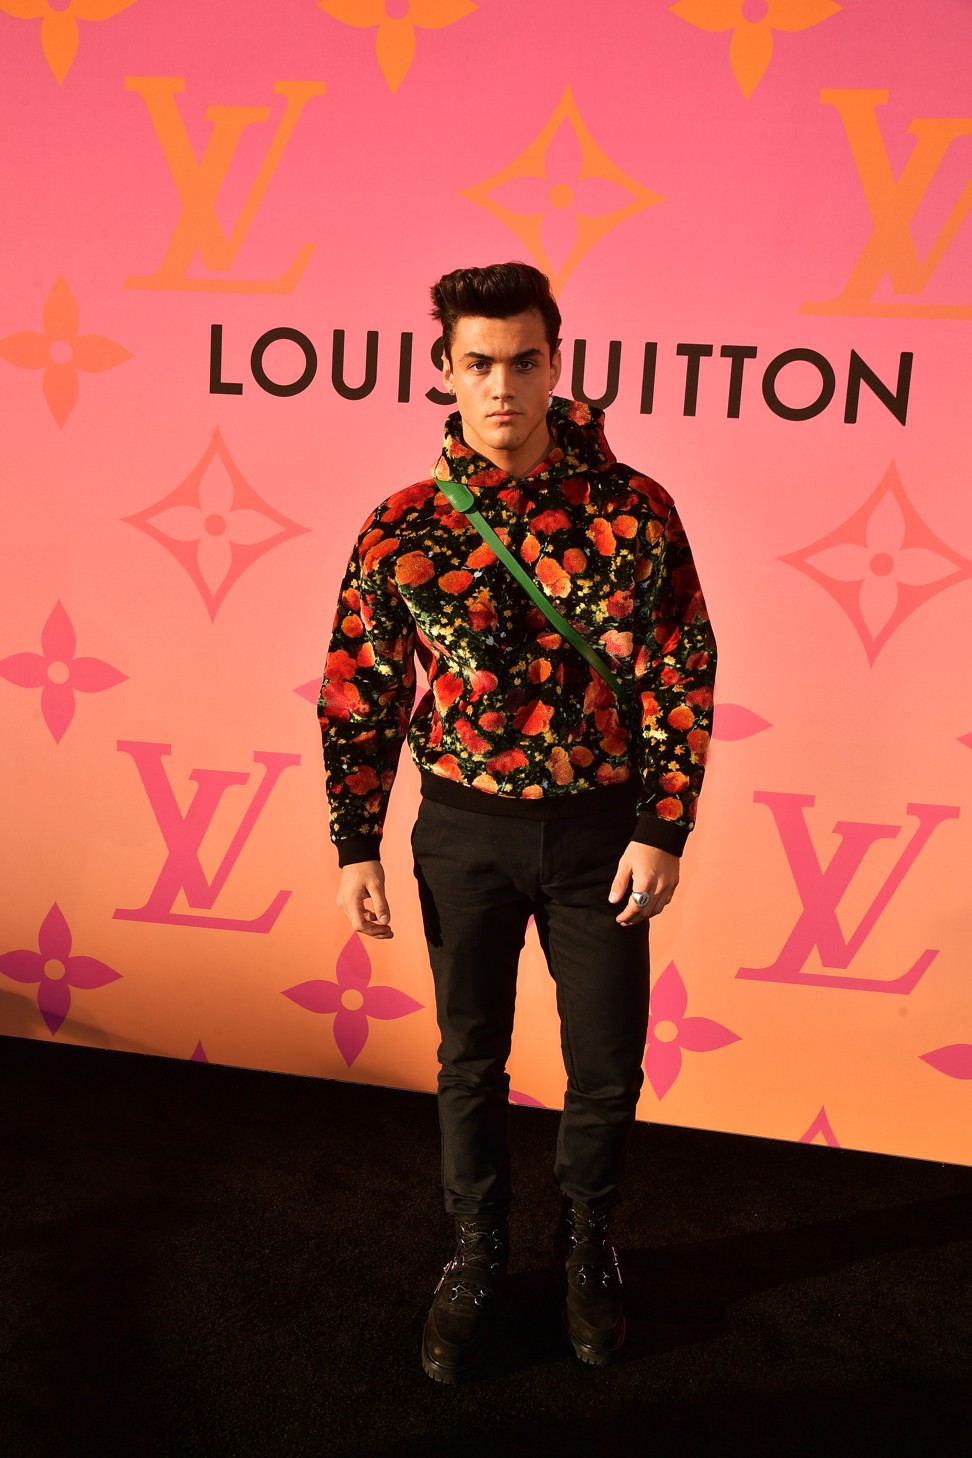 League of Legends launches an apparel line with Louis Vuitton - GadgetMatch